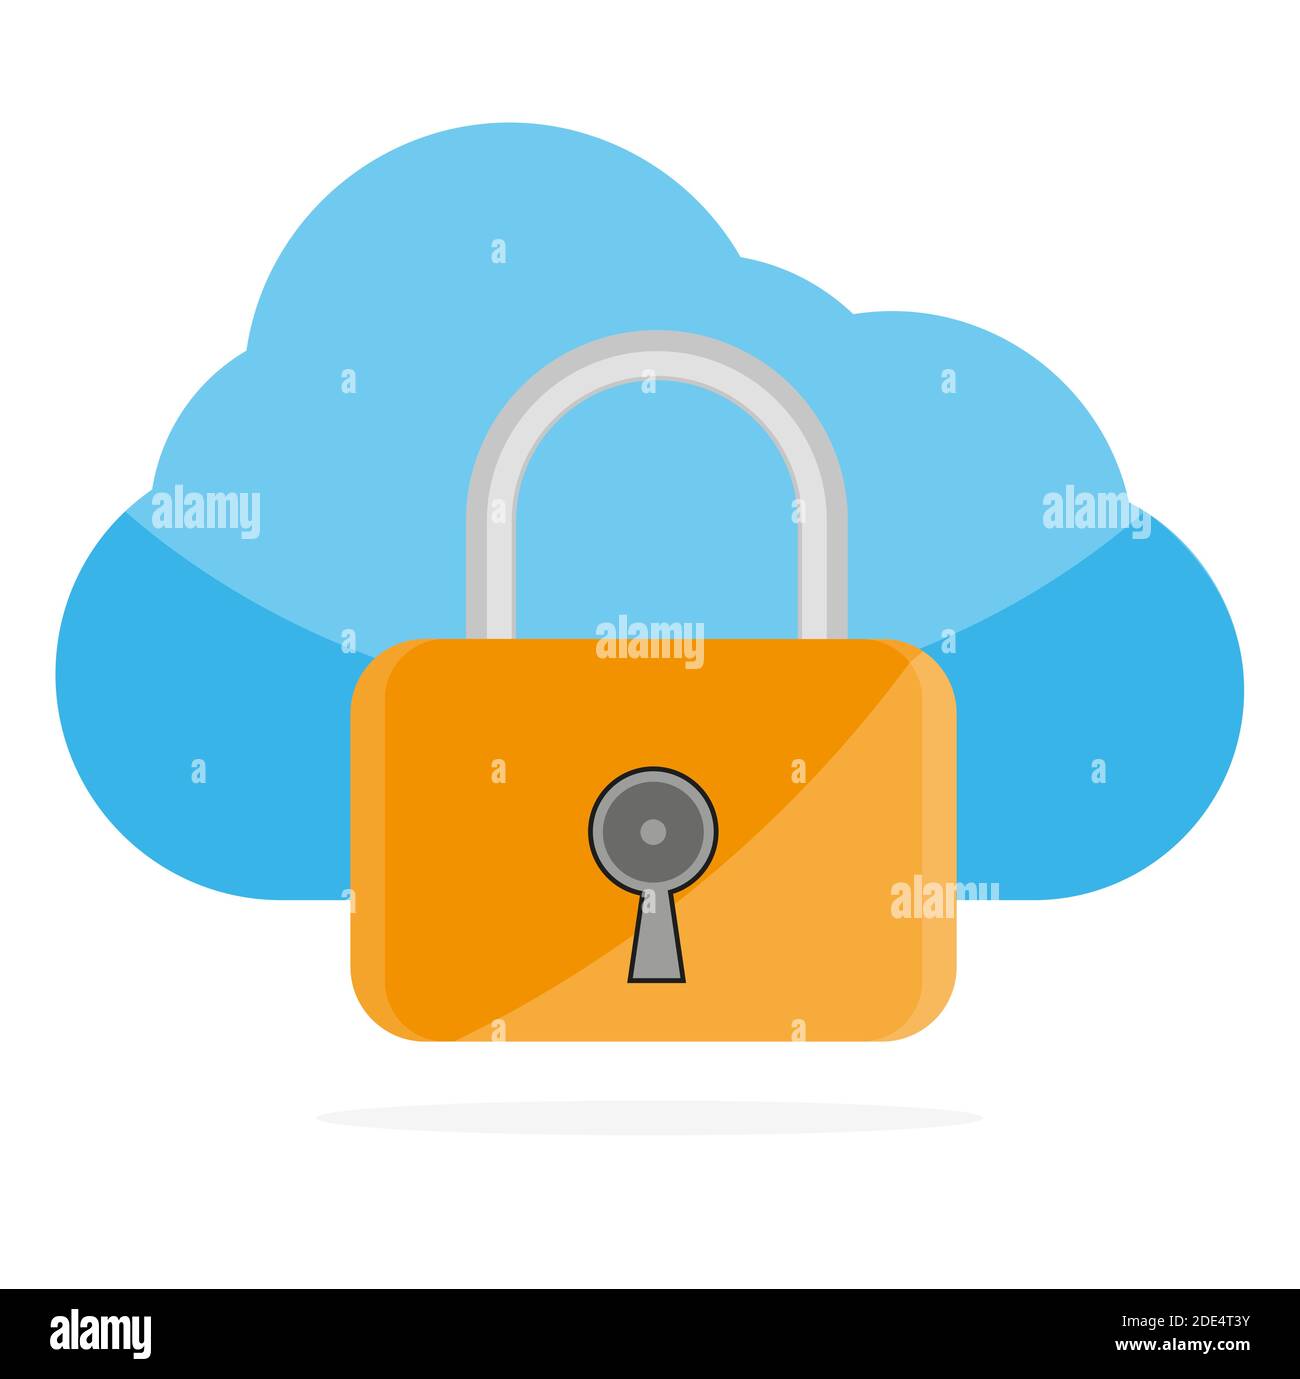 Cloud Computing Lock Security Concept Vektor-Illustration auf einem weißen Hintergrund Stock Vektor